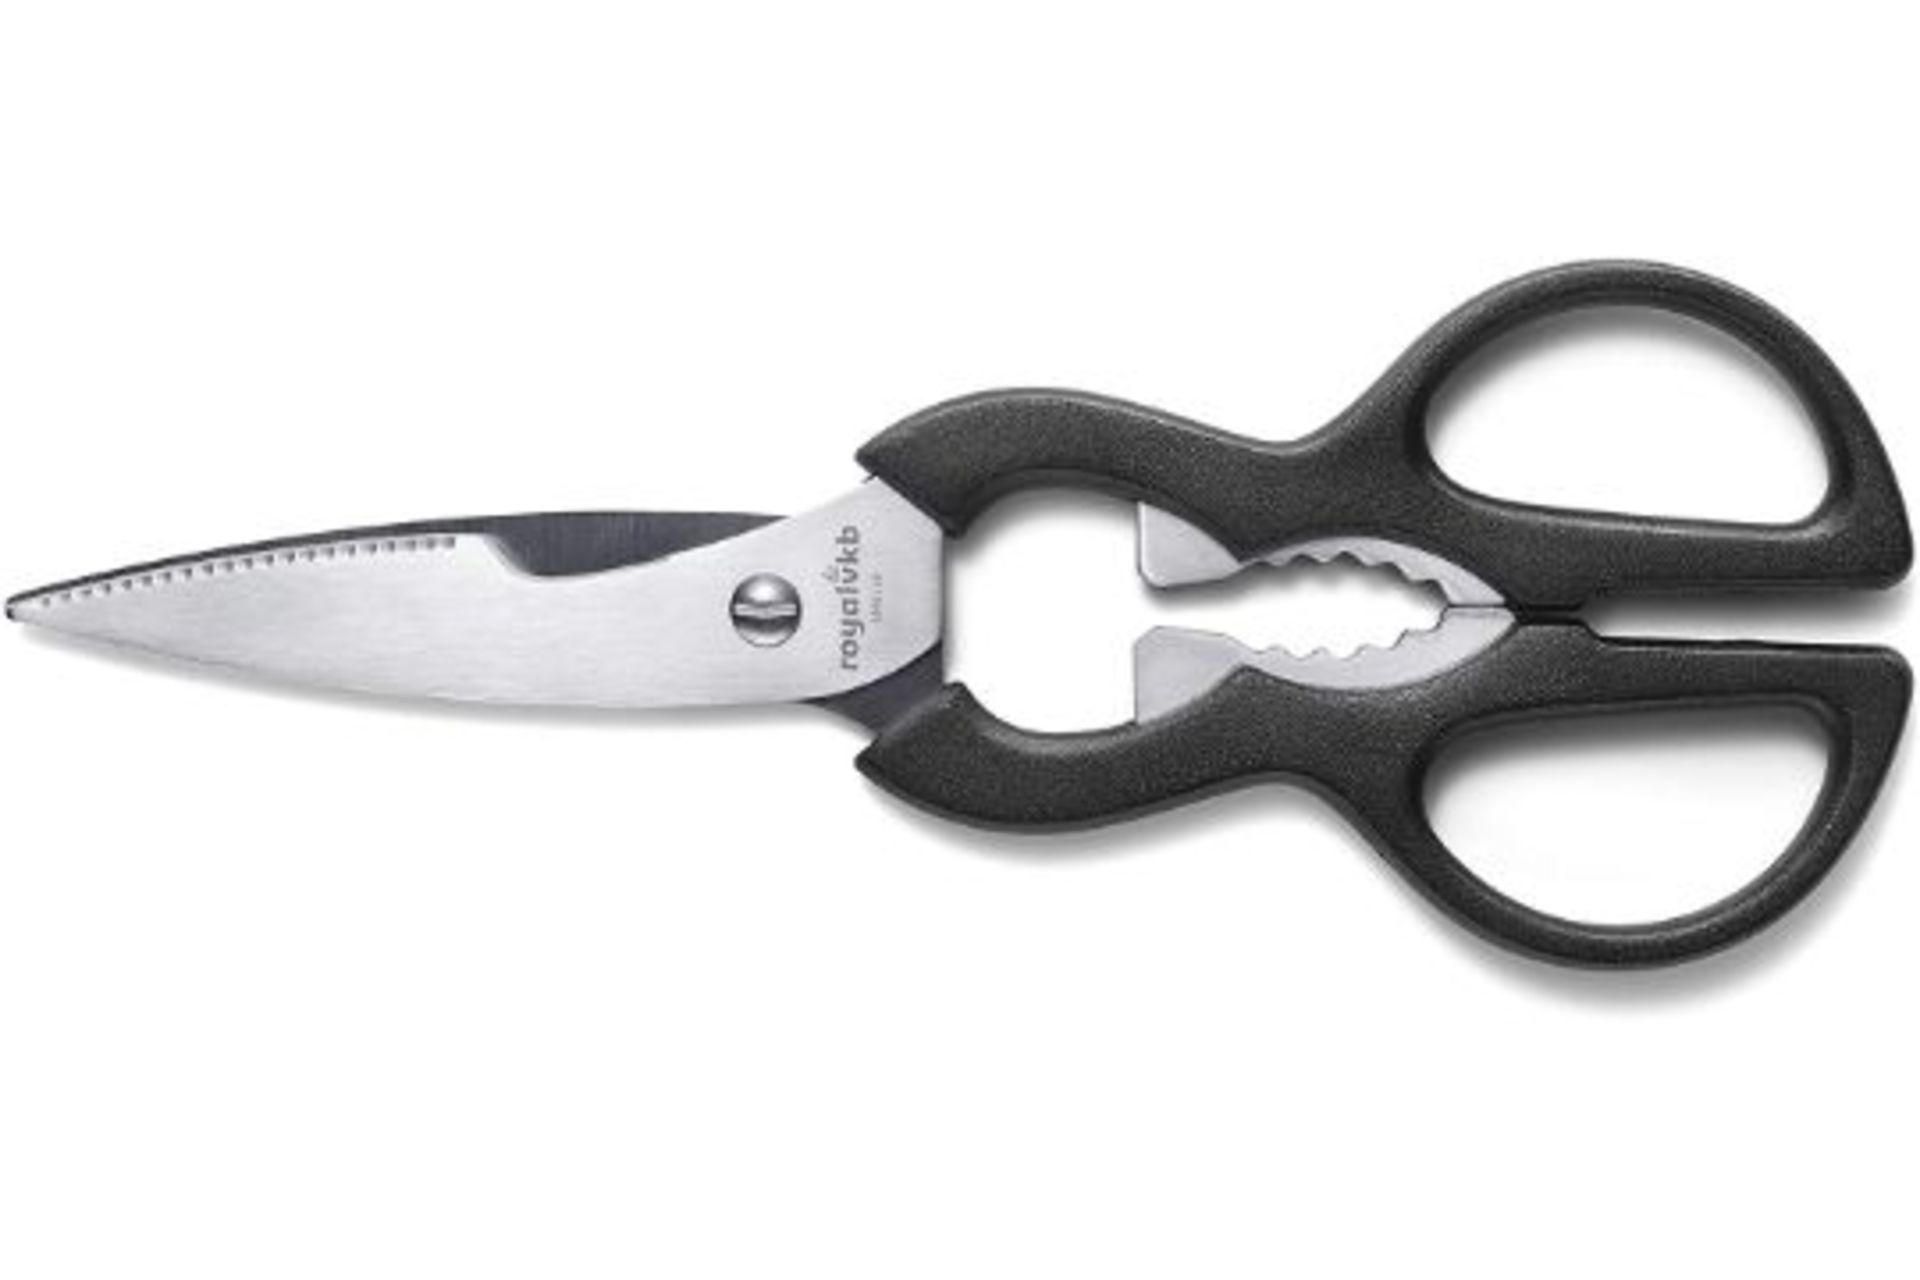 Brand New Royal VKB Multipurpose Kitchen Scissors, Stainless Steel - RRP £13.